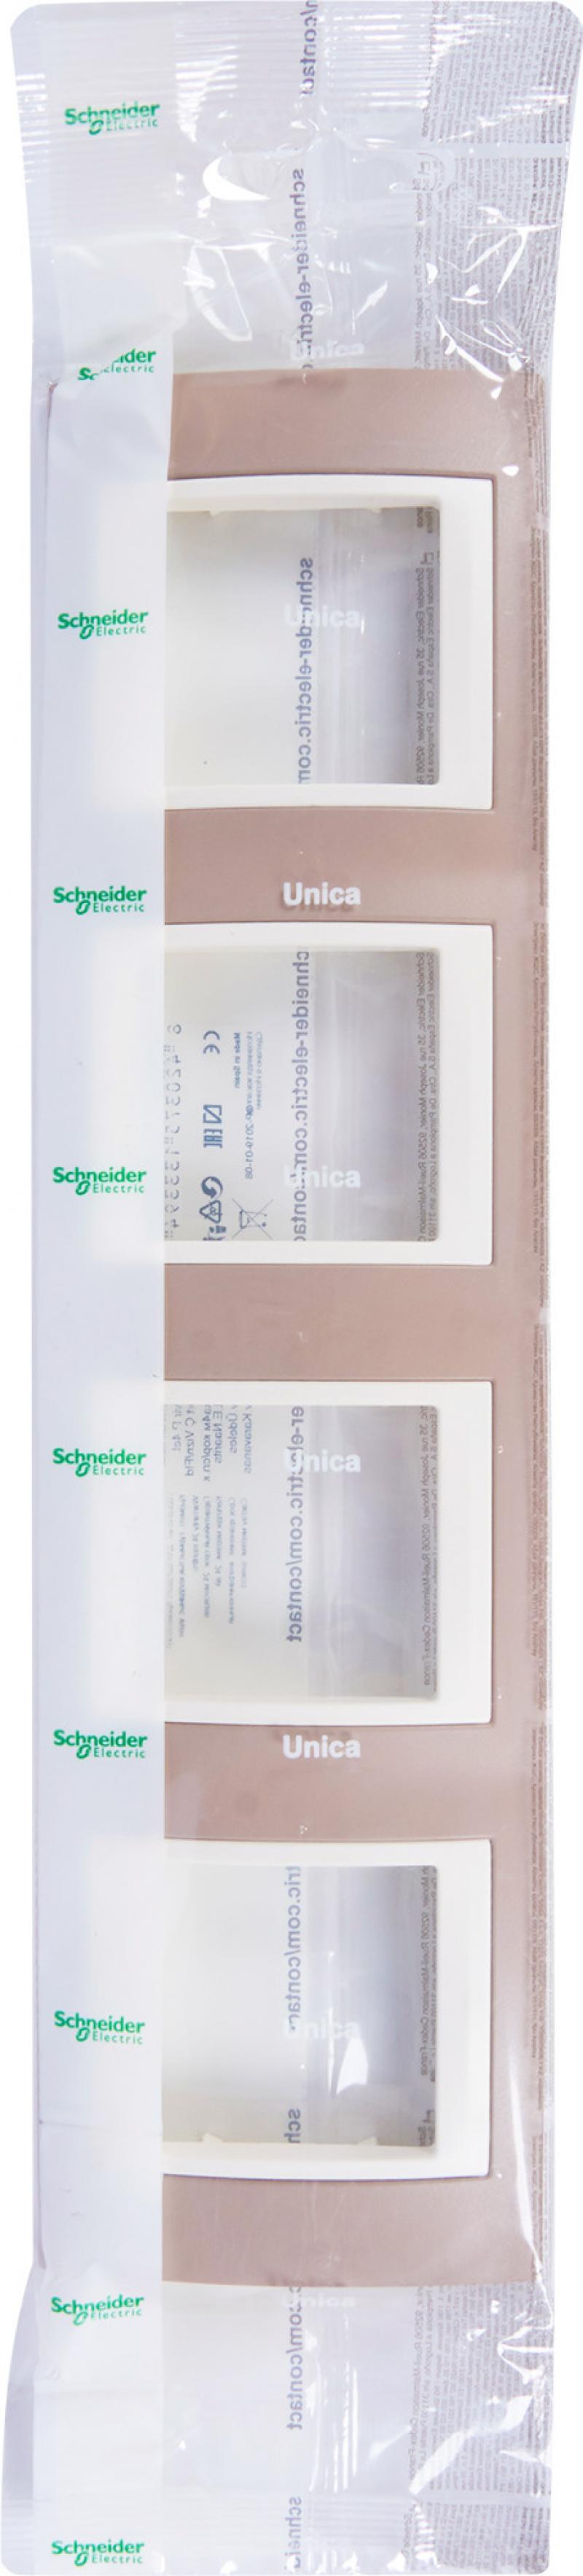 Рамка для розеток и выключателей Schneider Electric Unica 4 поста, цвет коричневый/бежевый